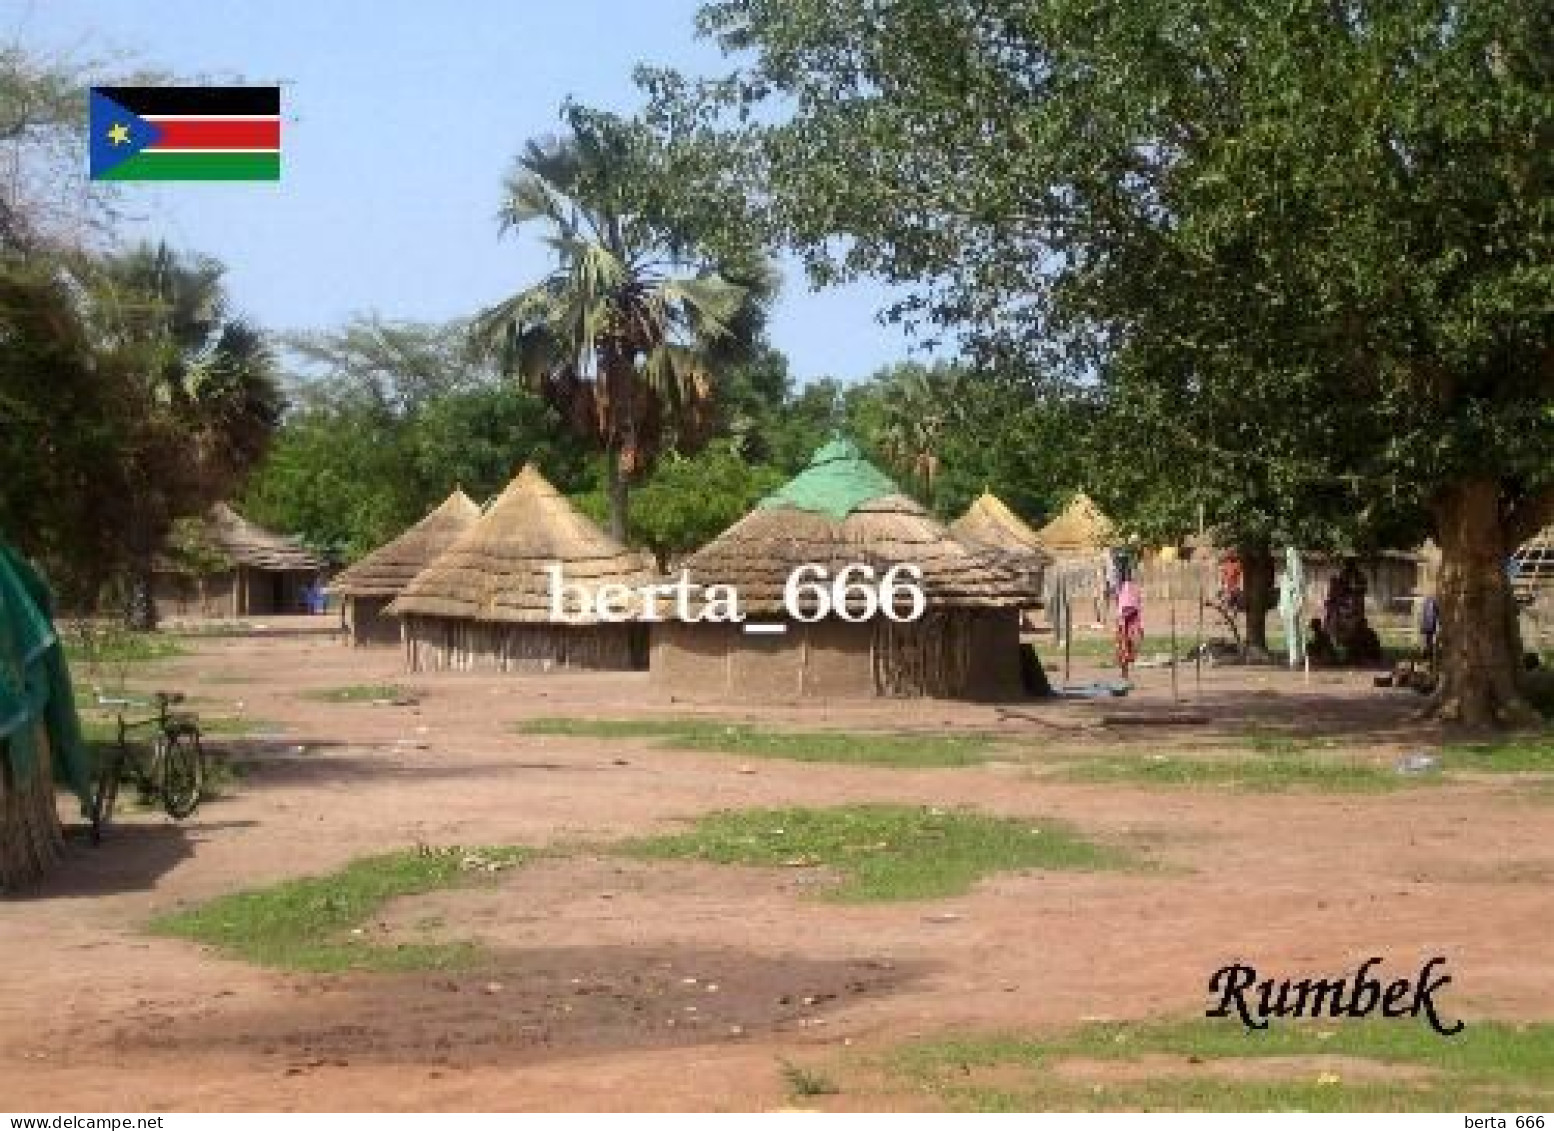 South Sudan Rumbek Huts New Postcard - Sudan